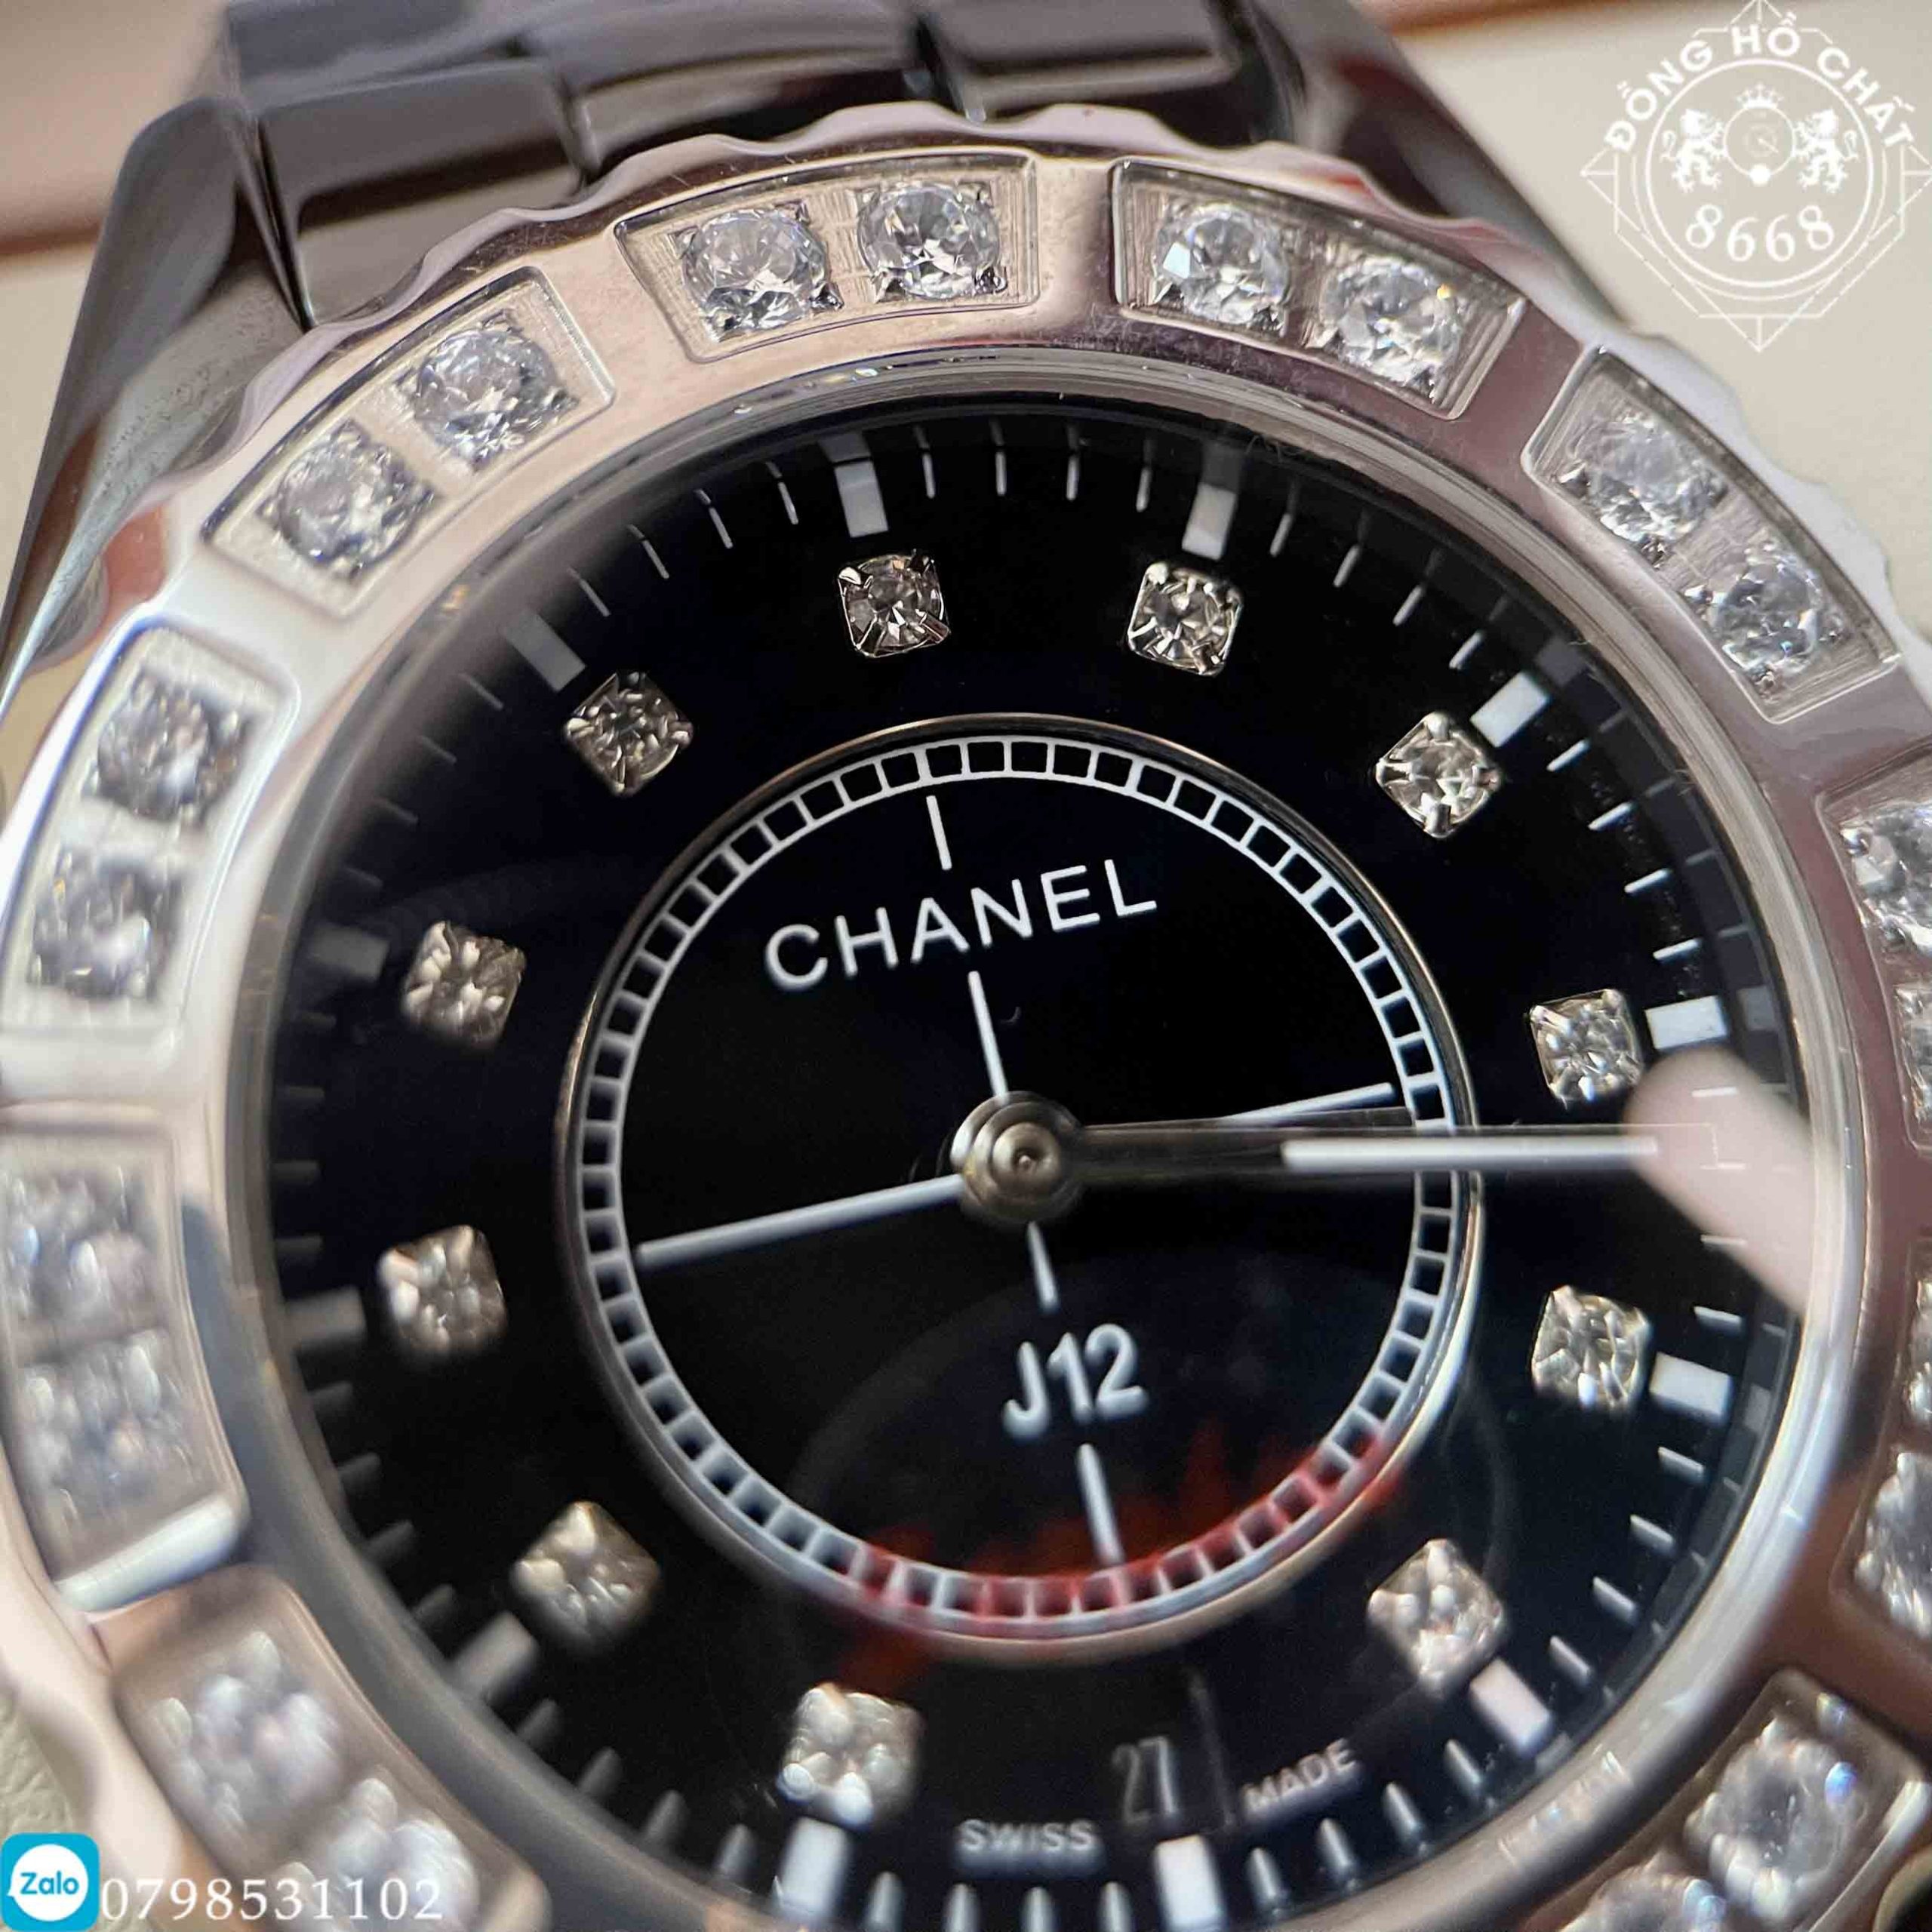 Top 10 mẫu đồng hồ Chanel đáng sở hữu nhất mọi thời đại